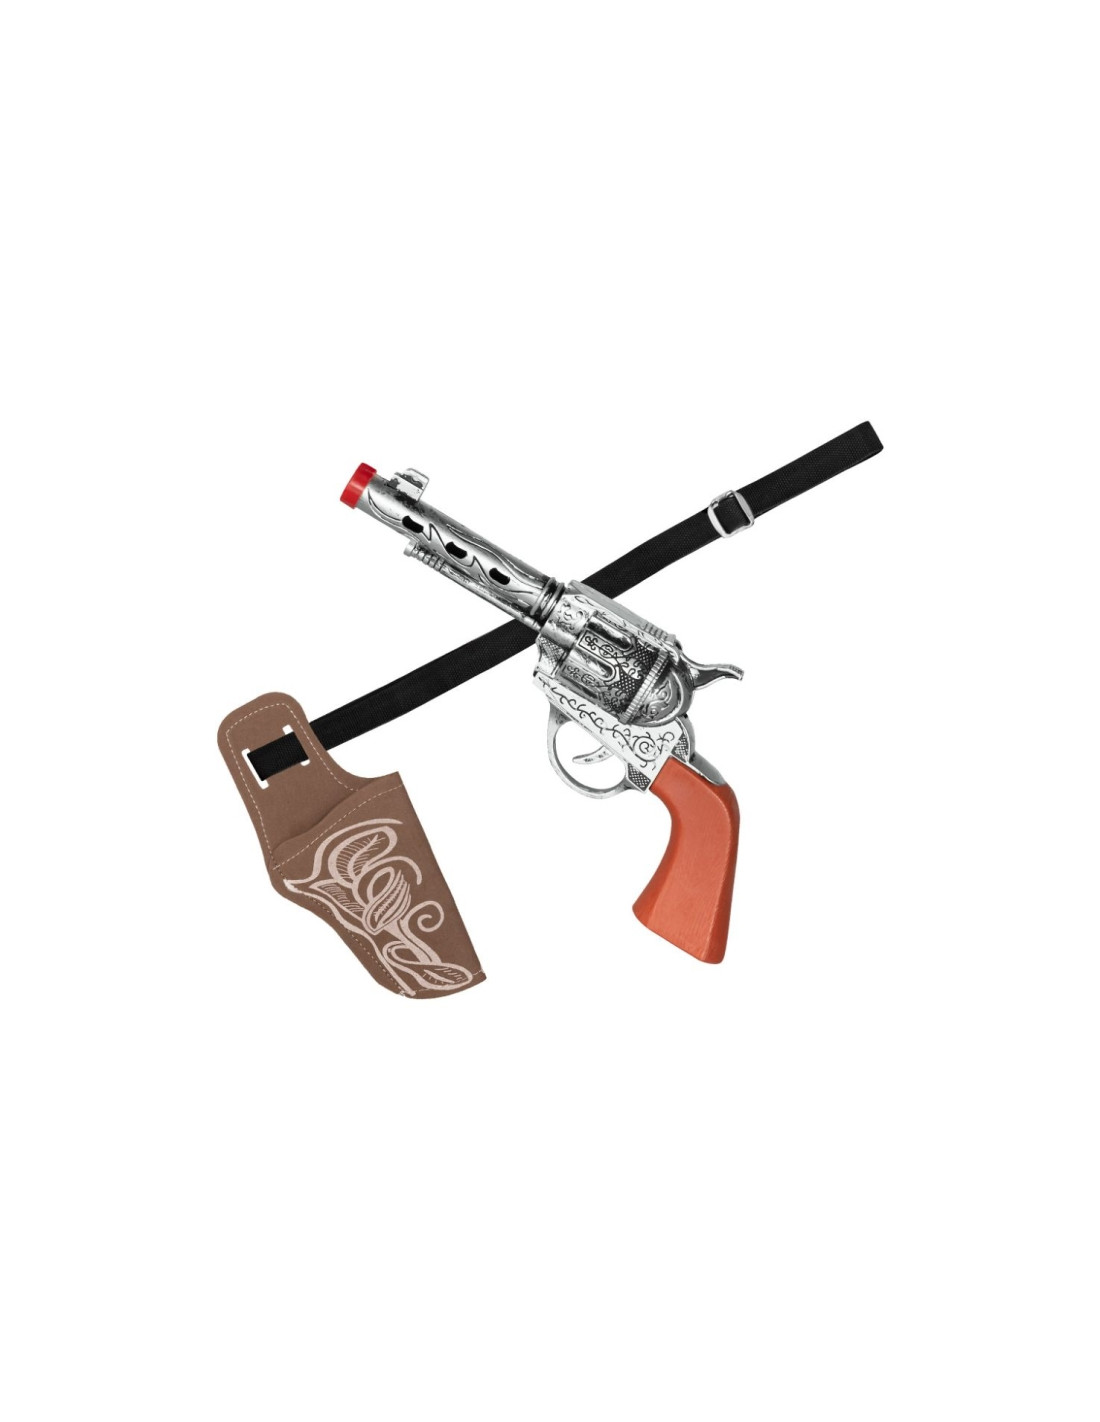 Tradineur - Cartuchera con pistolas - Fabricado en plástico y